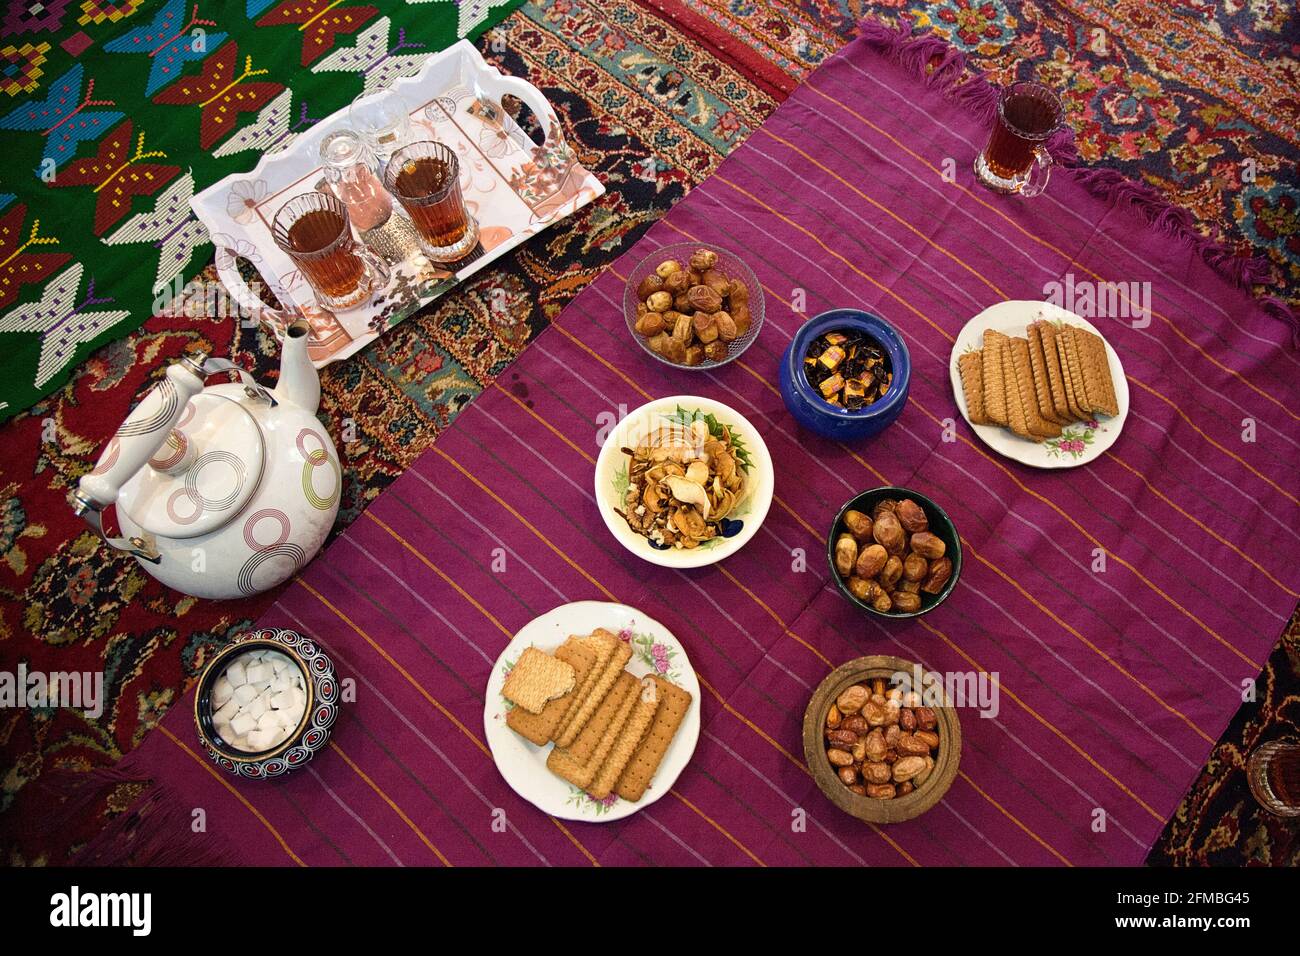 Los iraníes son conocidos por su hospitalidad y calidez. A menudo ofrecen a sus huéspedes té y pasteles tradicionales. Foto de stock